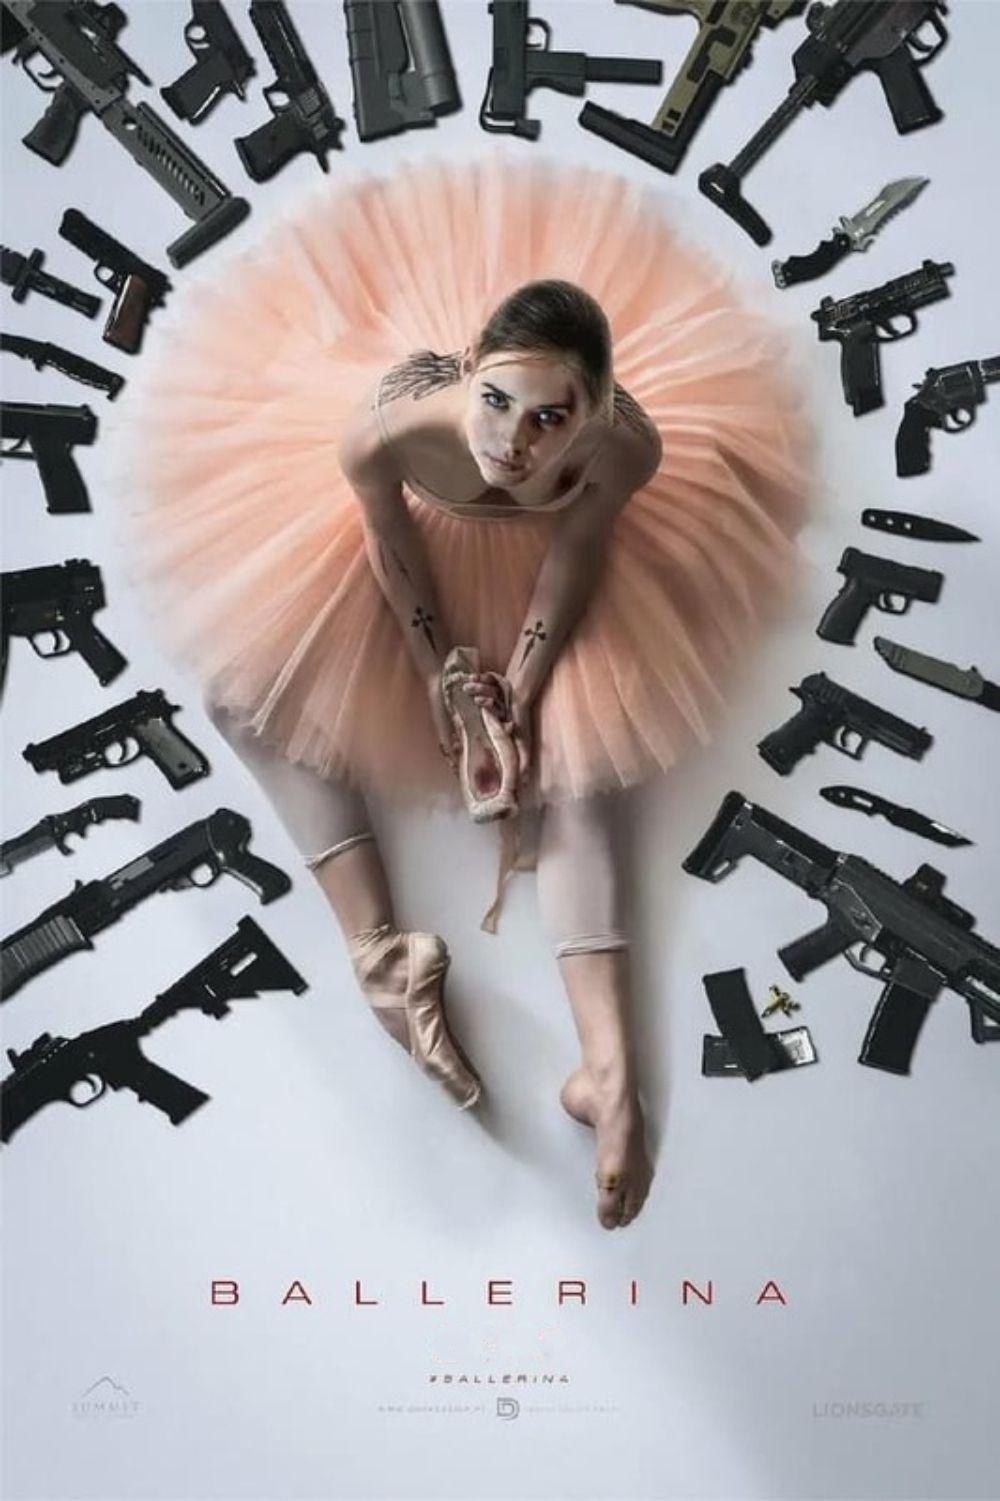 Ana de Armas in the poster for Ballerina movie